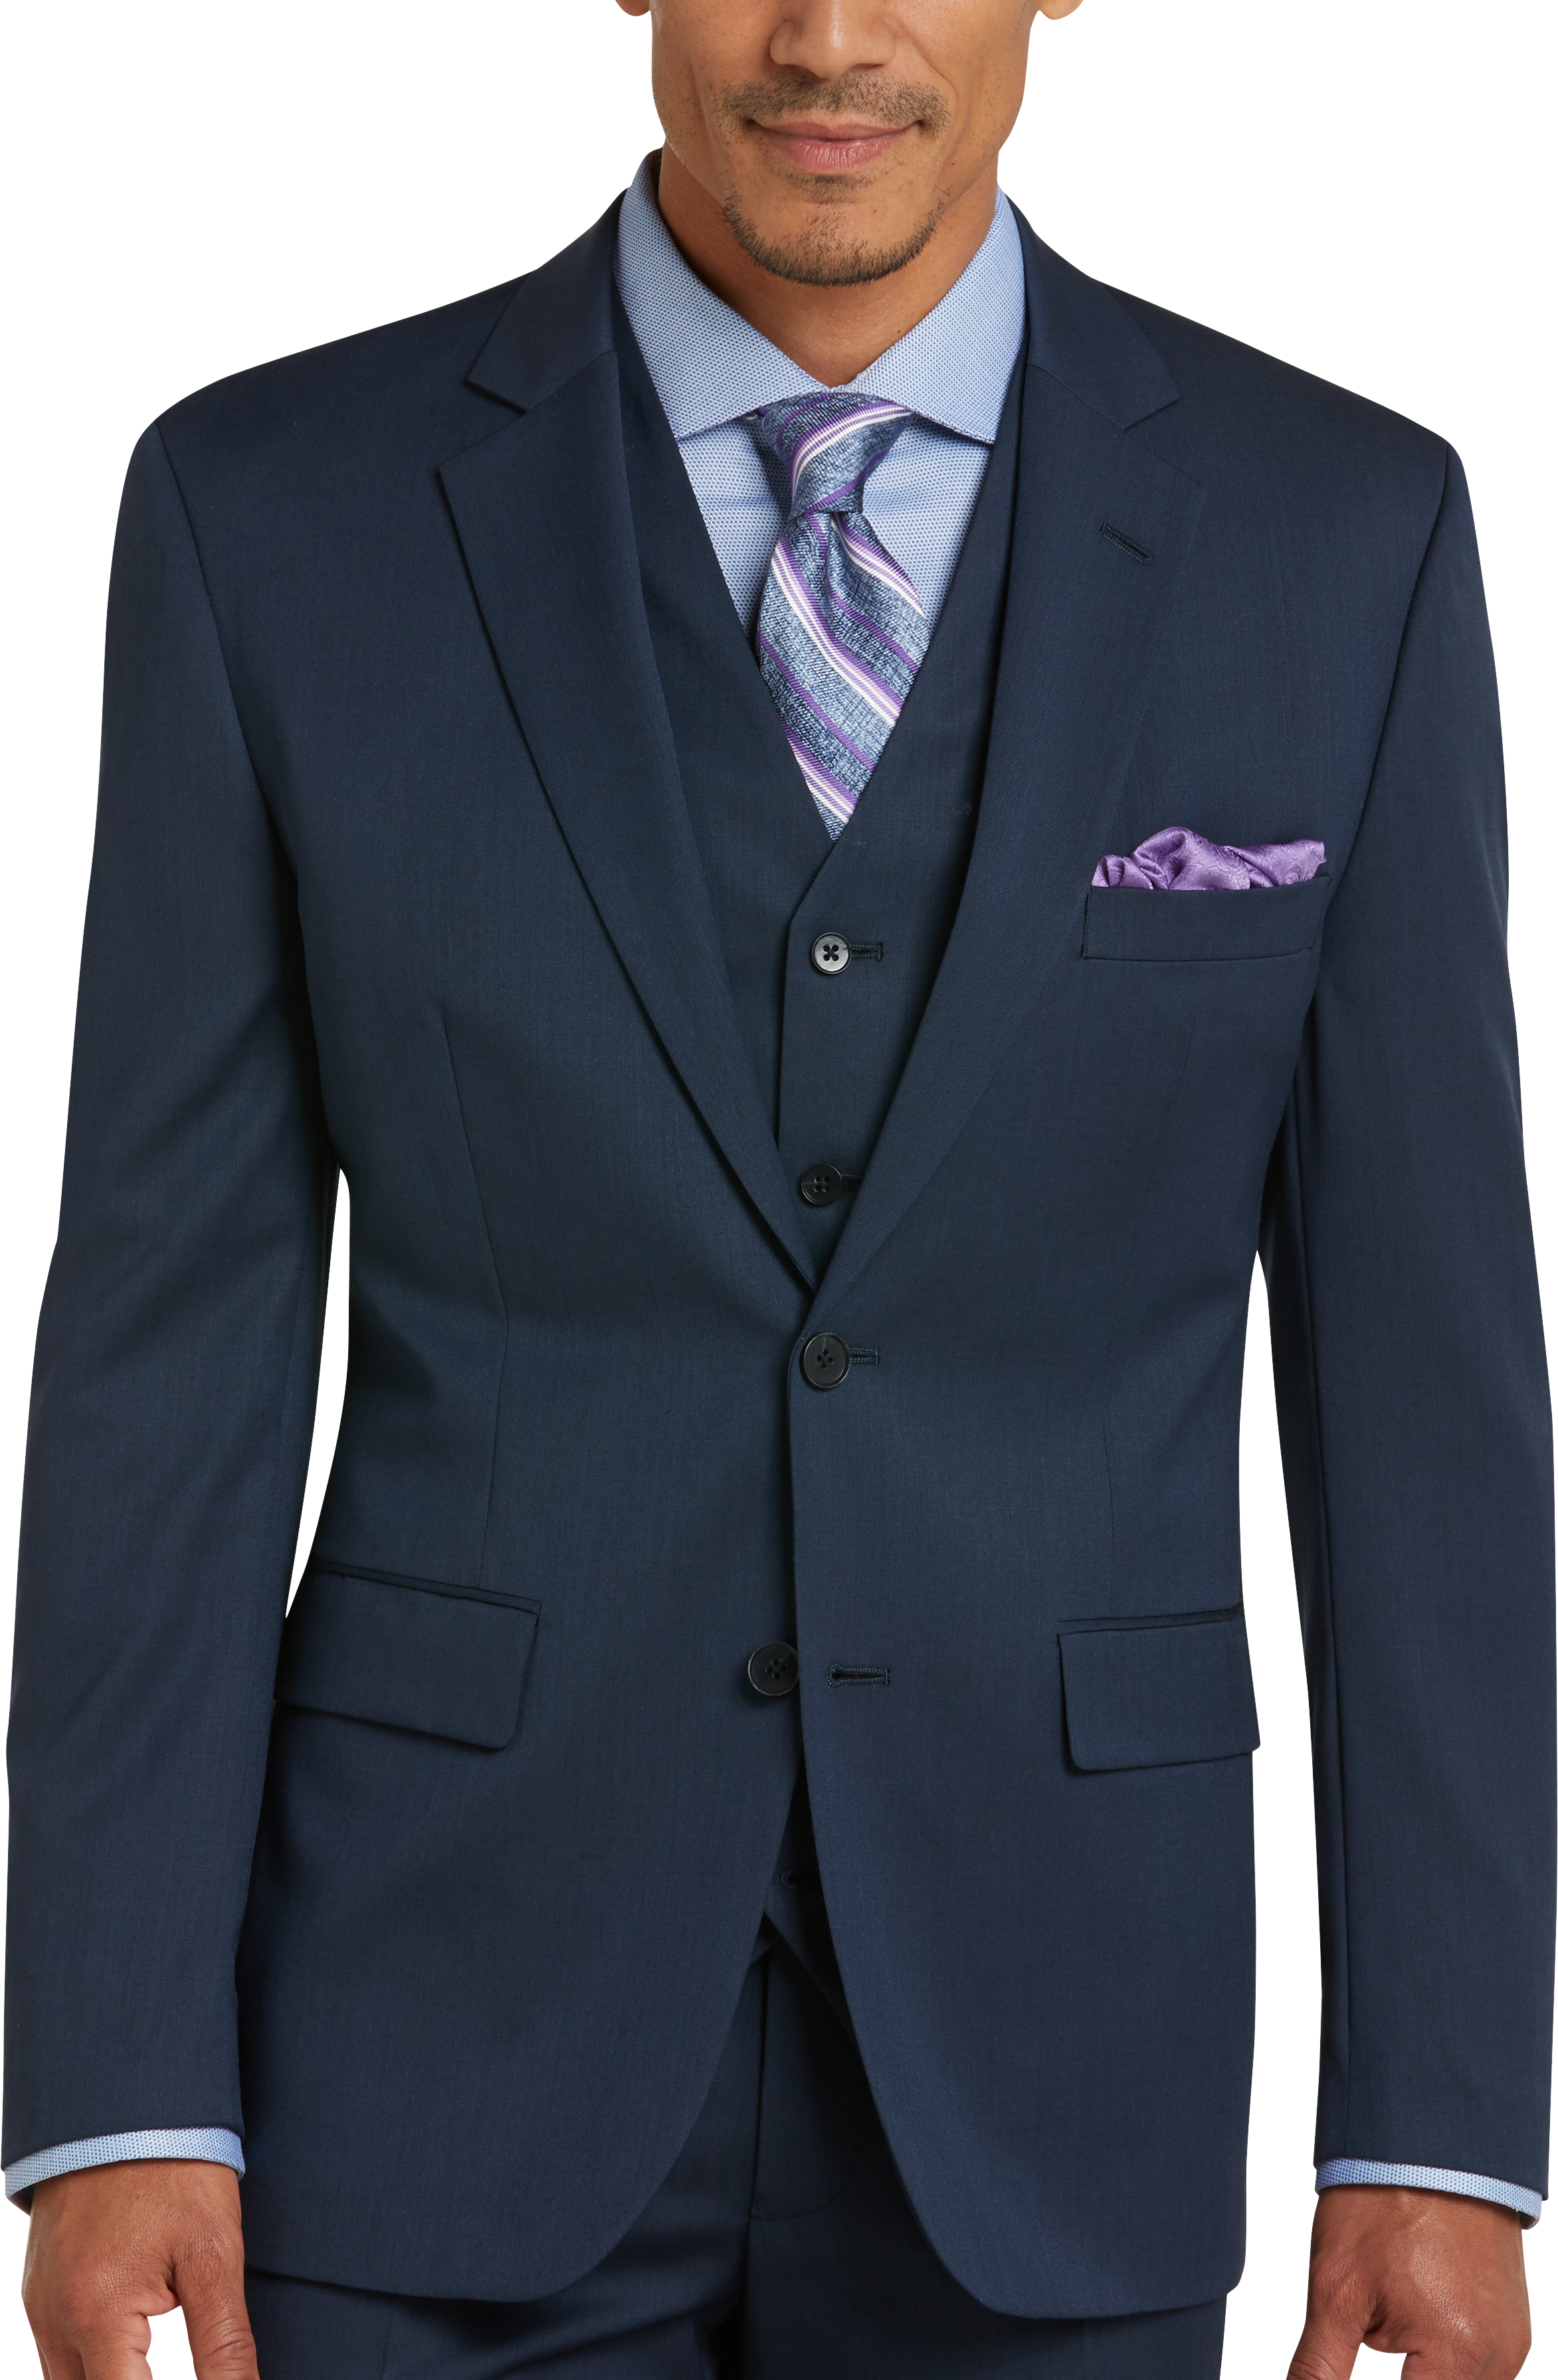 Men's Vested Suits, Suits with Vests | Men's Wearhouse